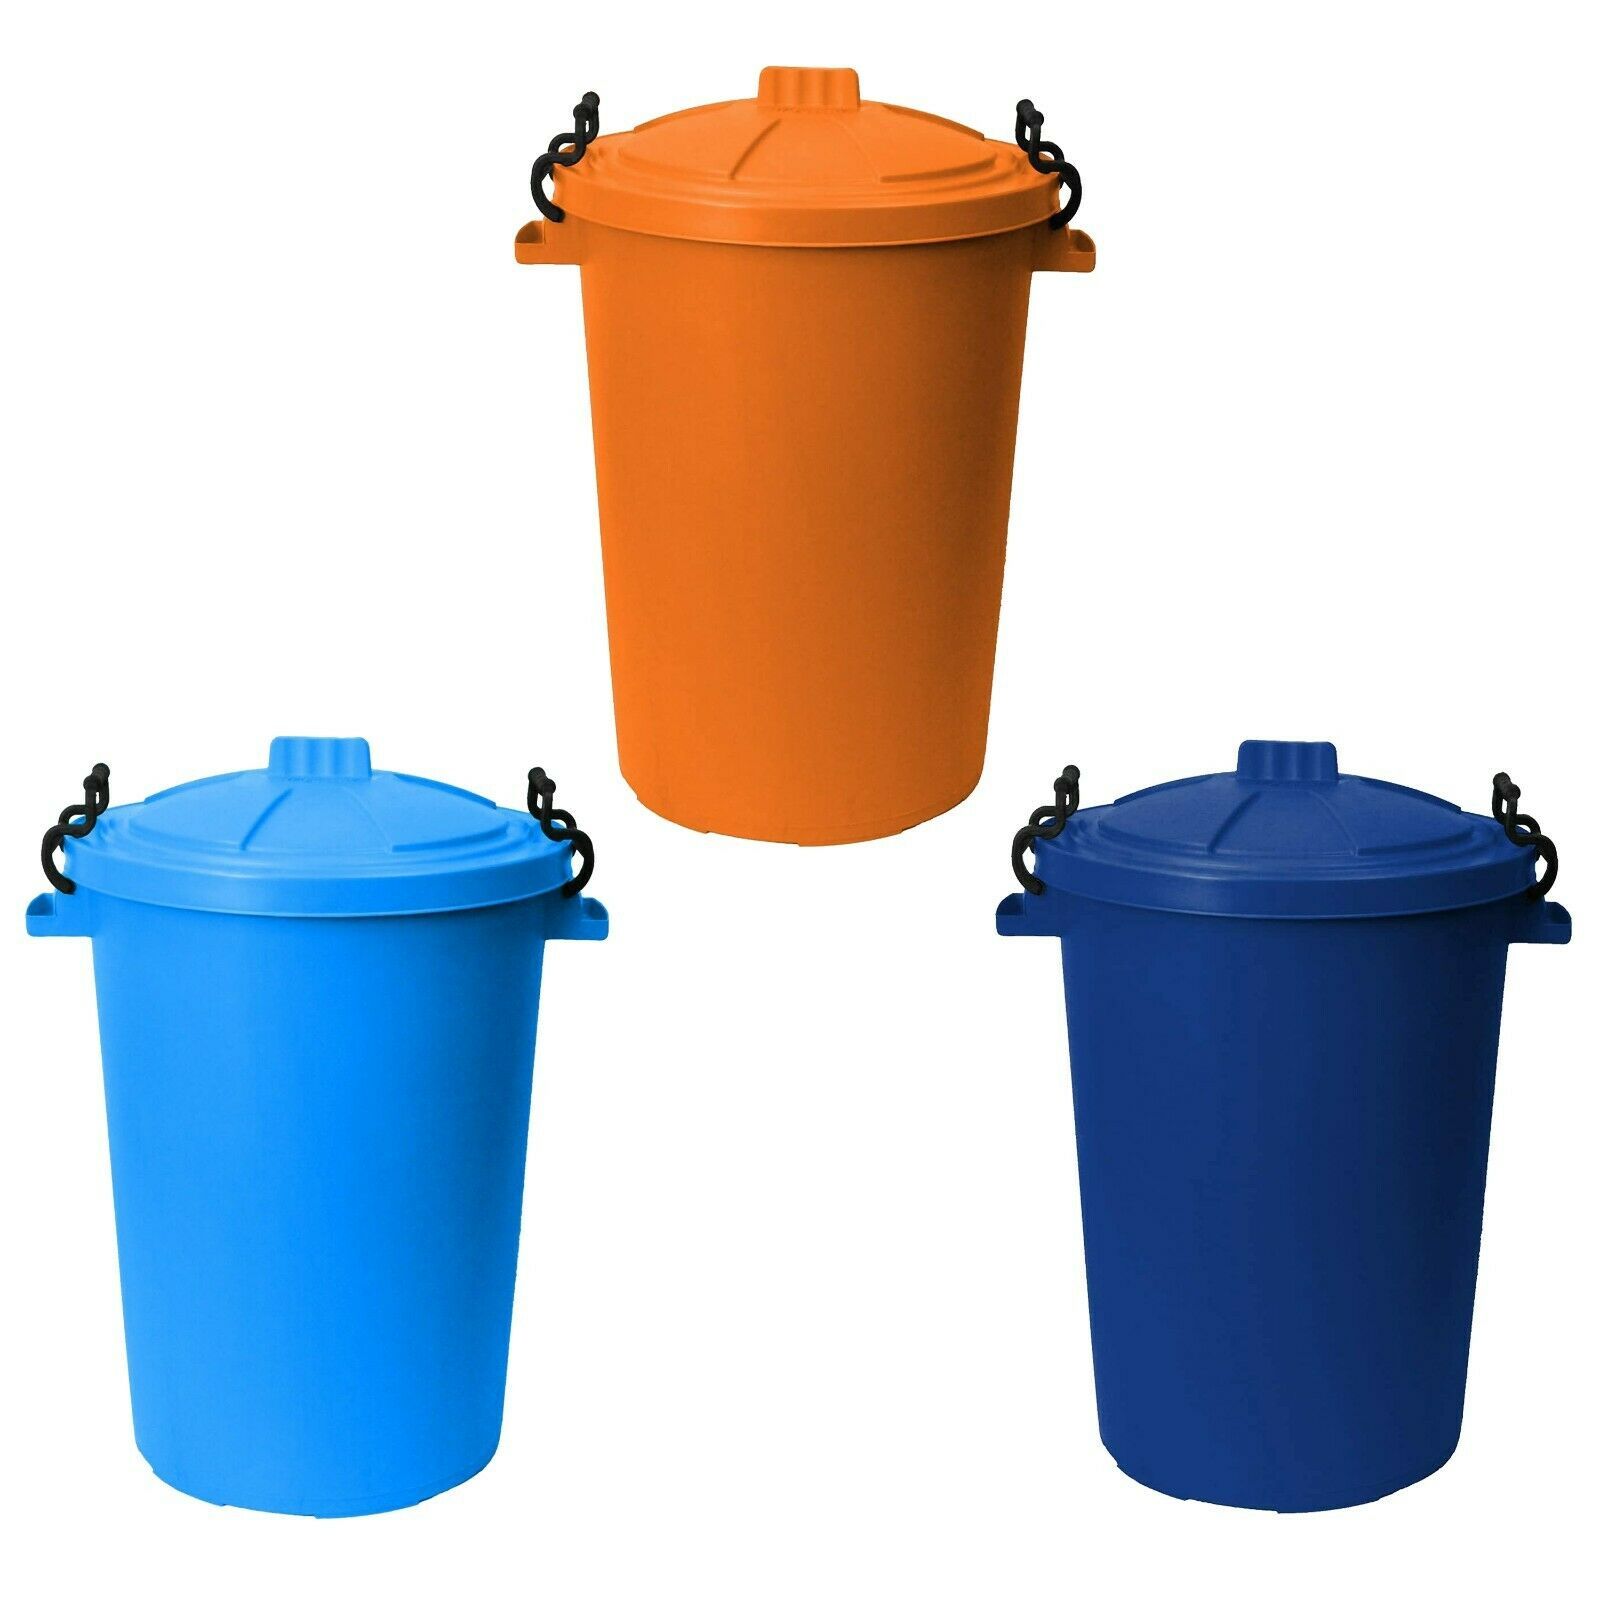 Orange or Blue Lidded bin